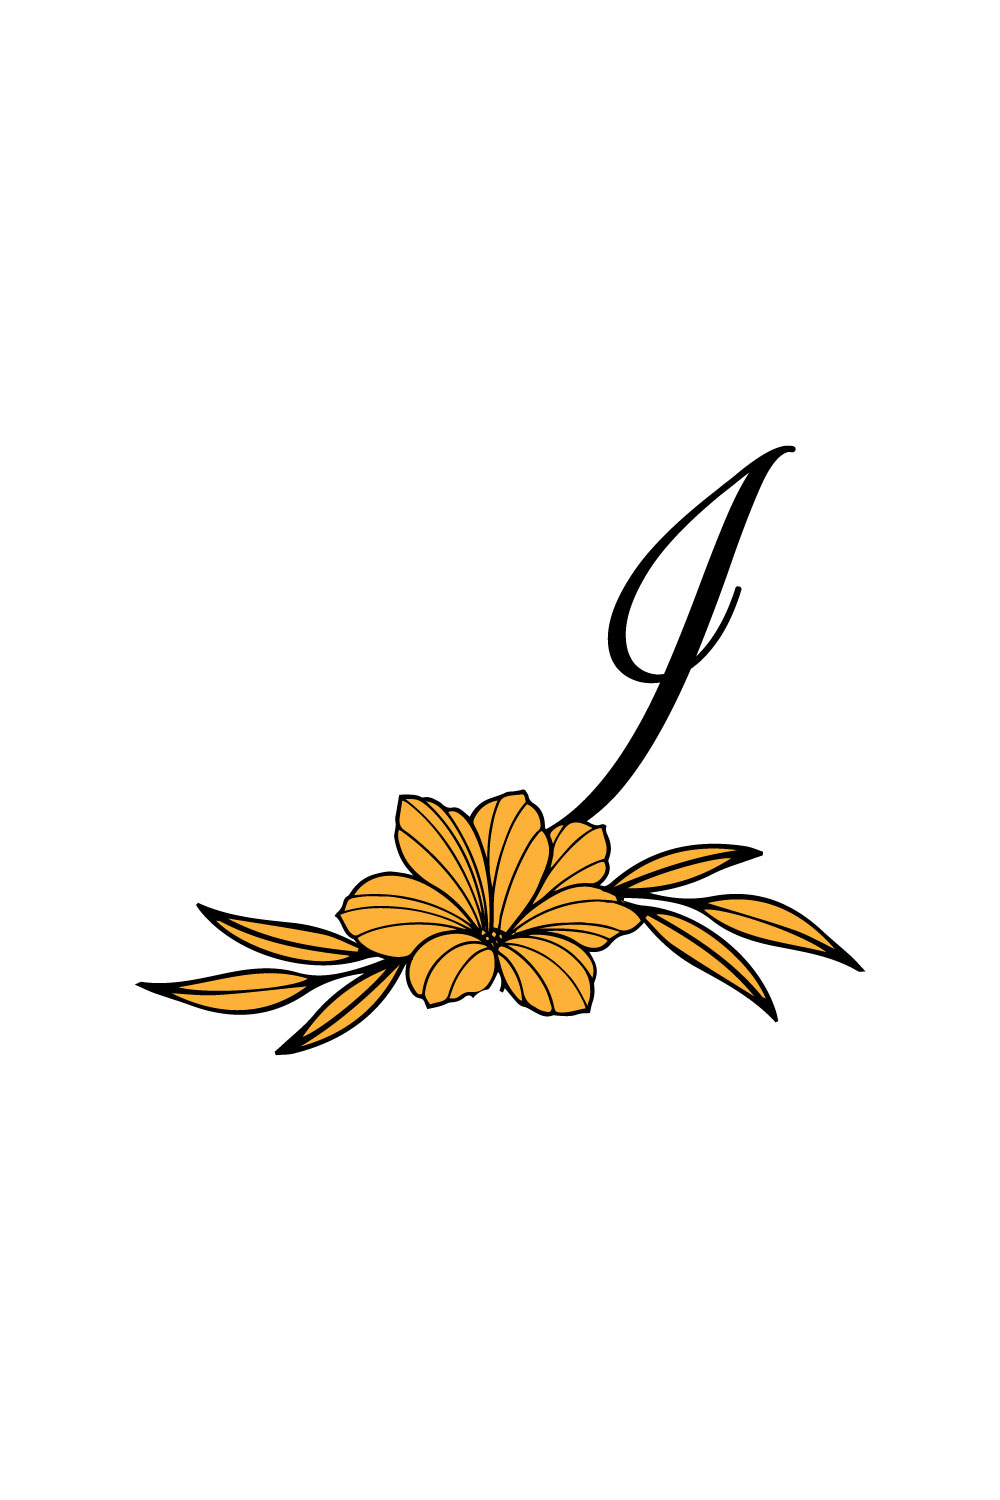 Free I Letter Flower Logo pinterest preview image.